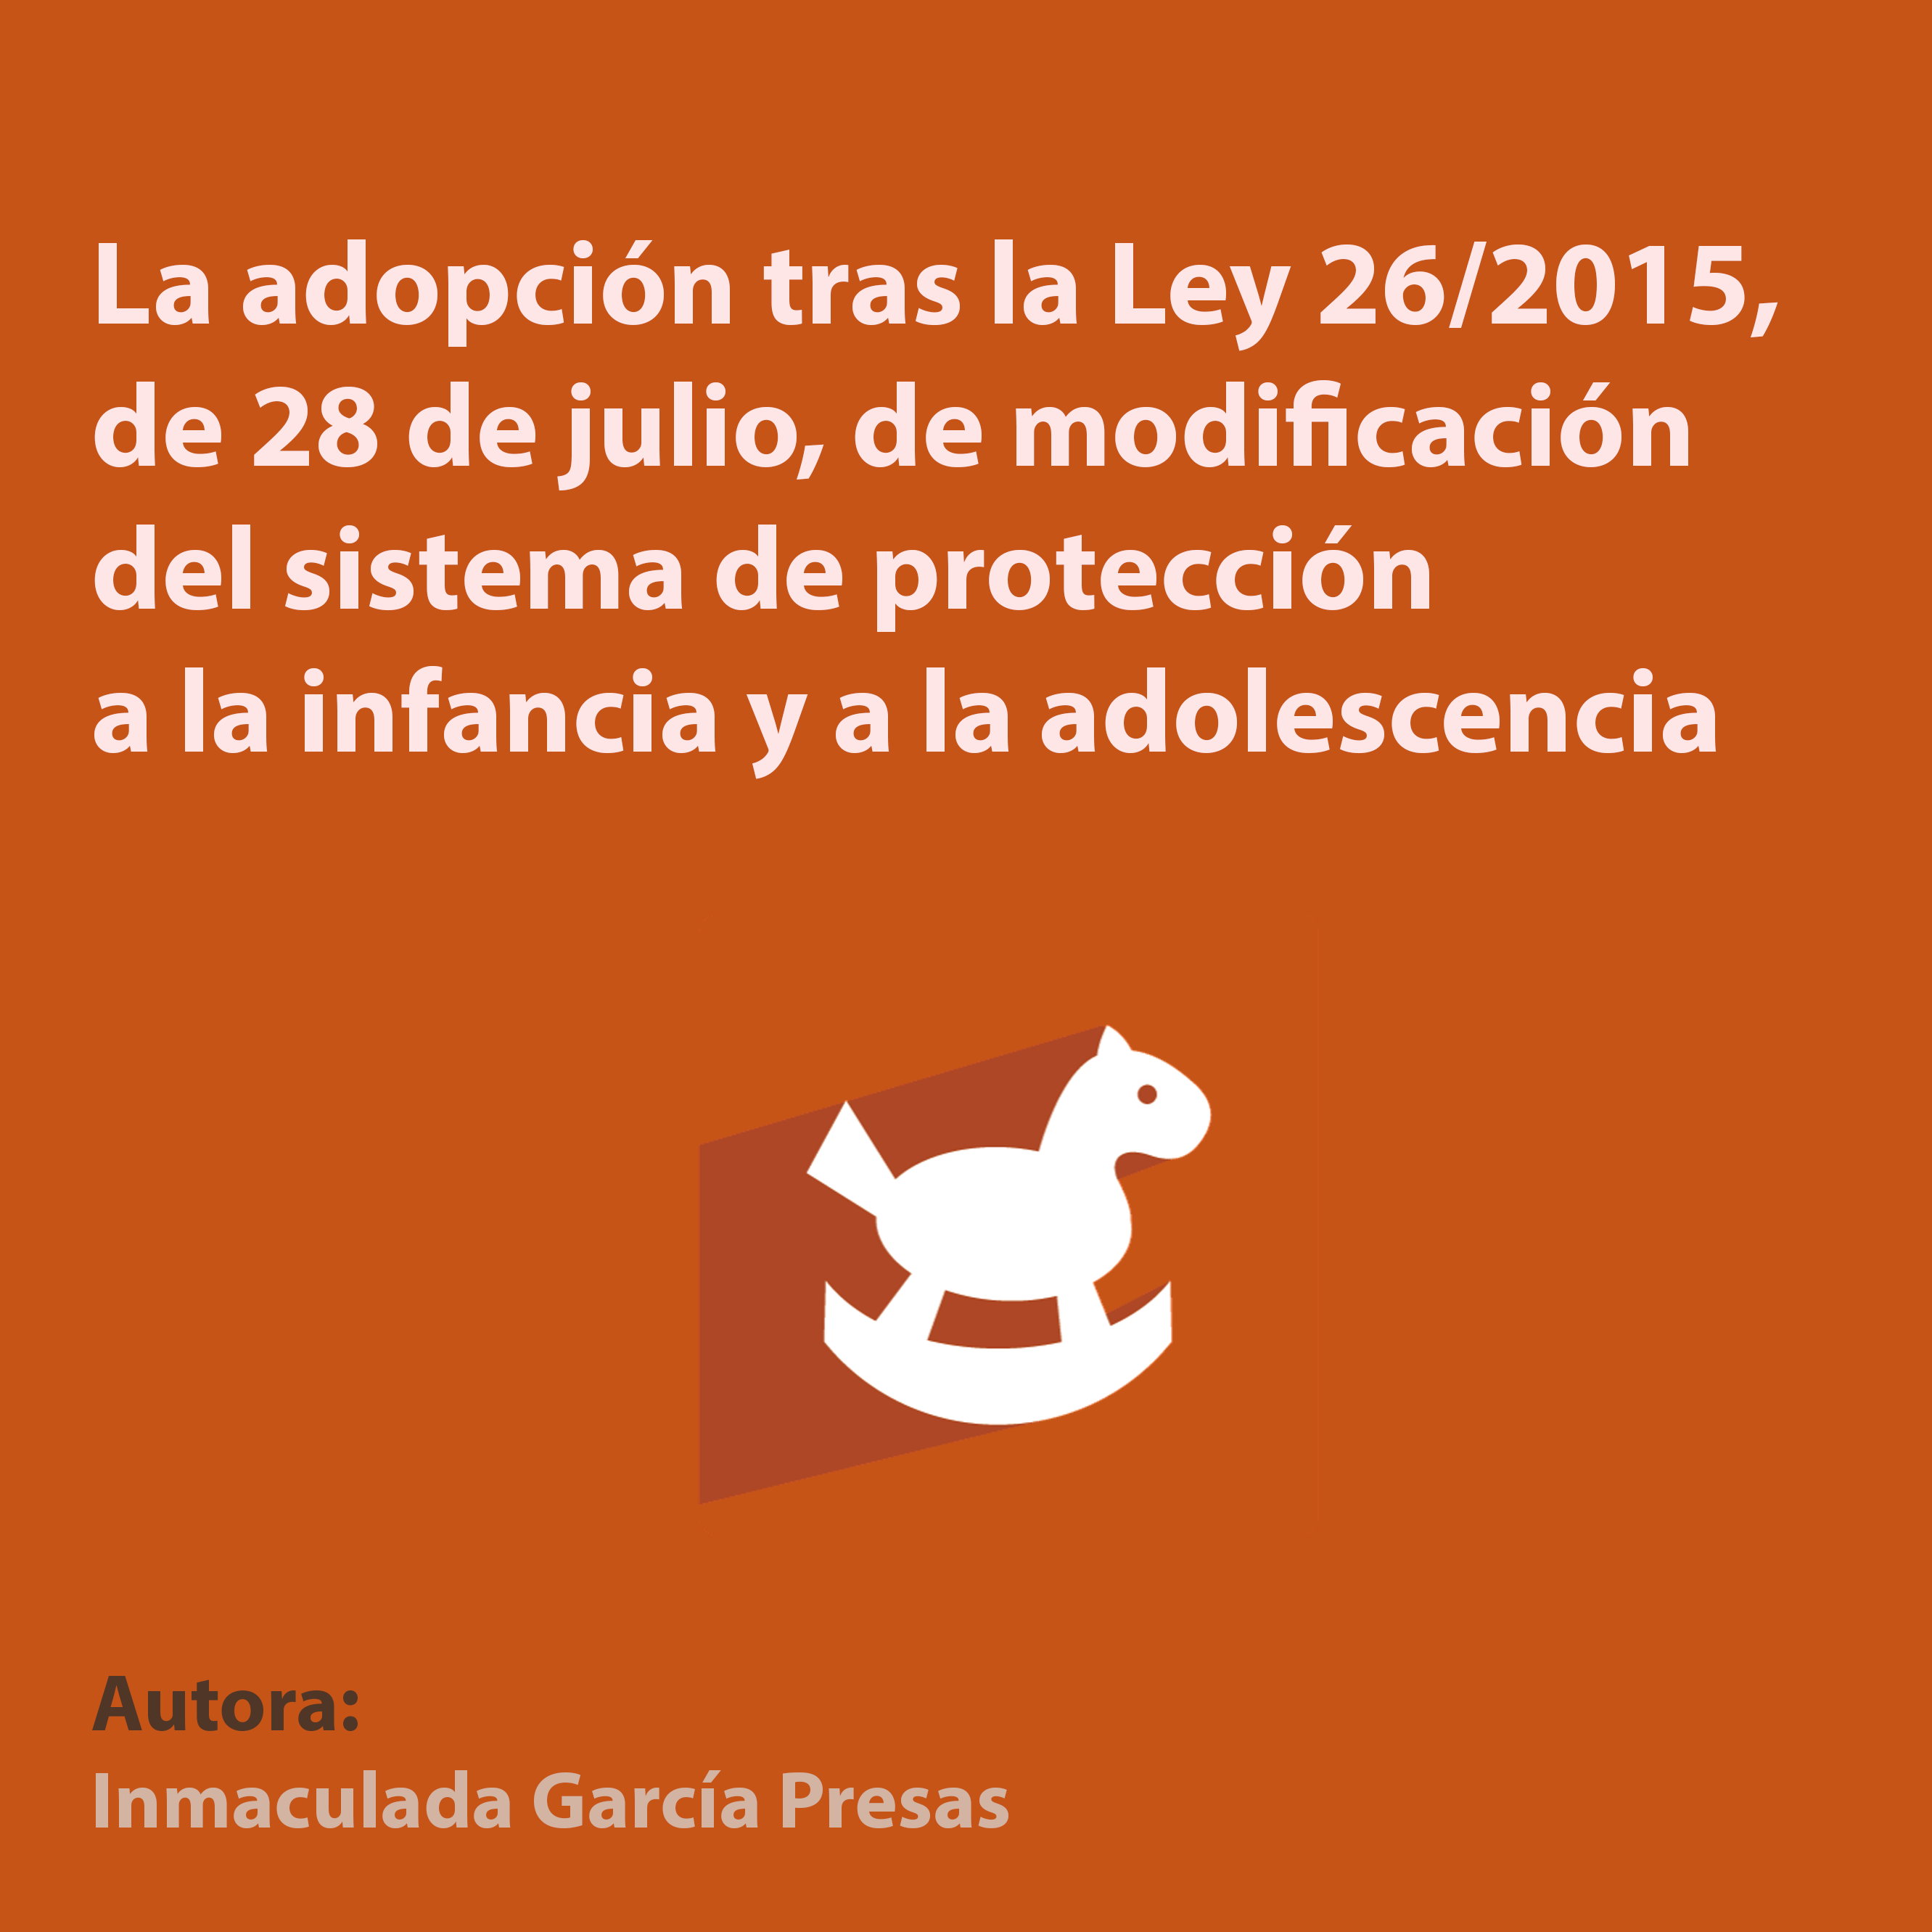 La adopción tras la Ley 26/2015, de 28 de julio, de modificación del sistema de protección a la infancia y a la adolescencia